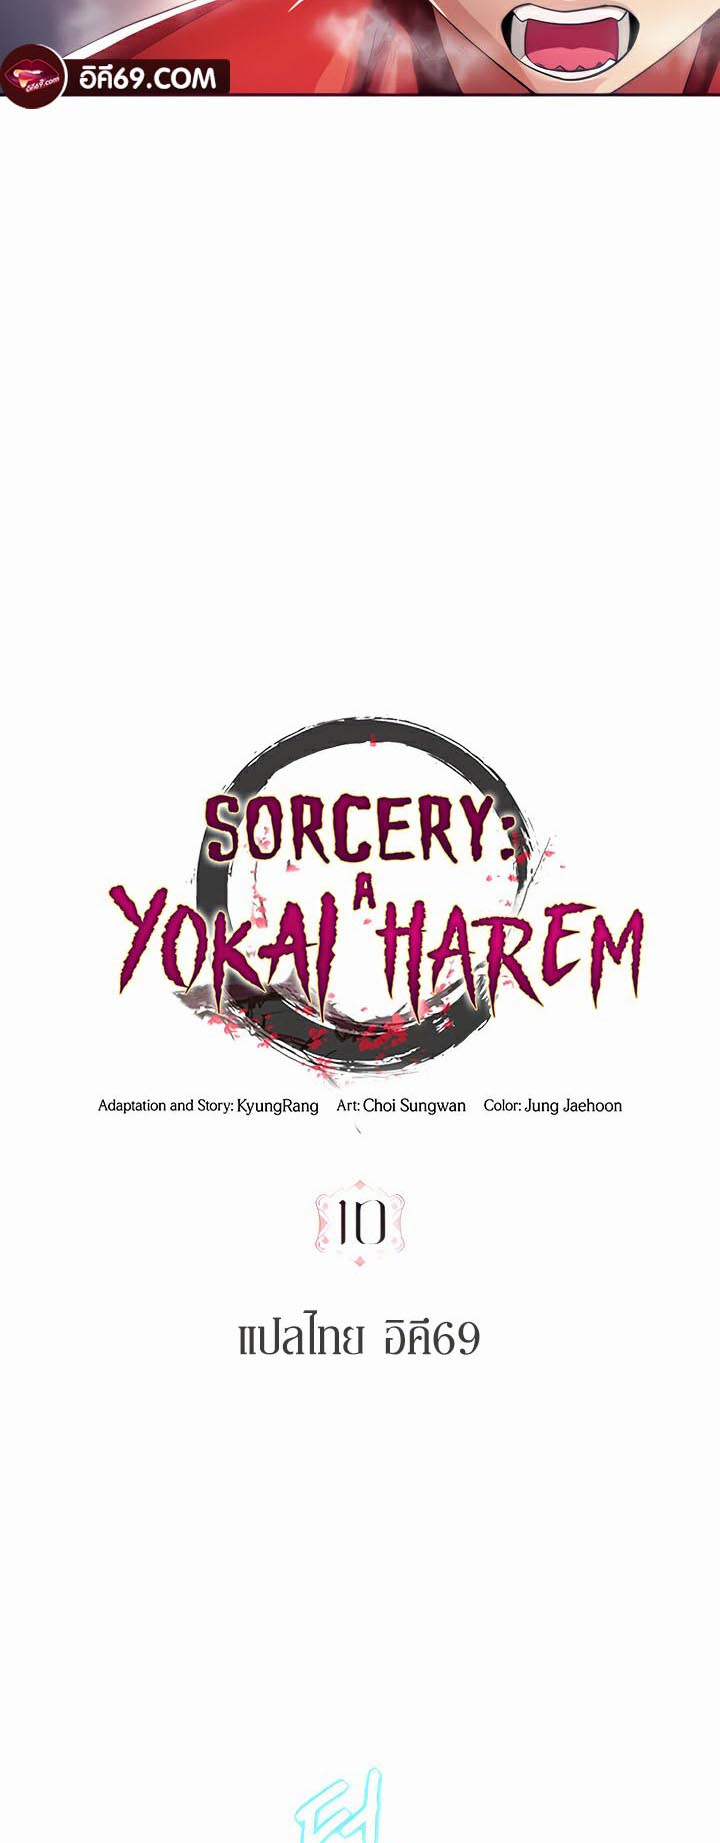 อ่านโดจิน เรื่อง Sorcery A Yokai Harem 10 08